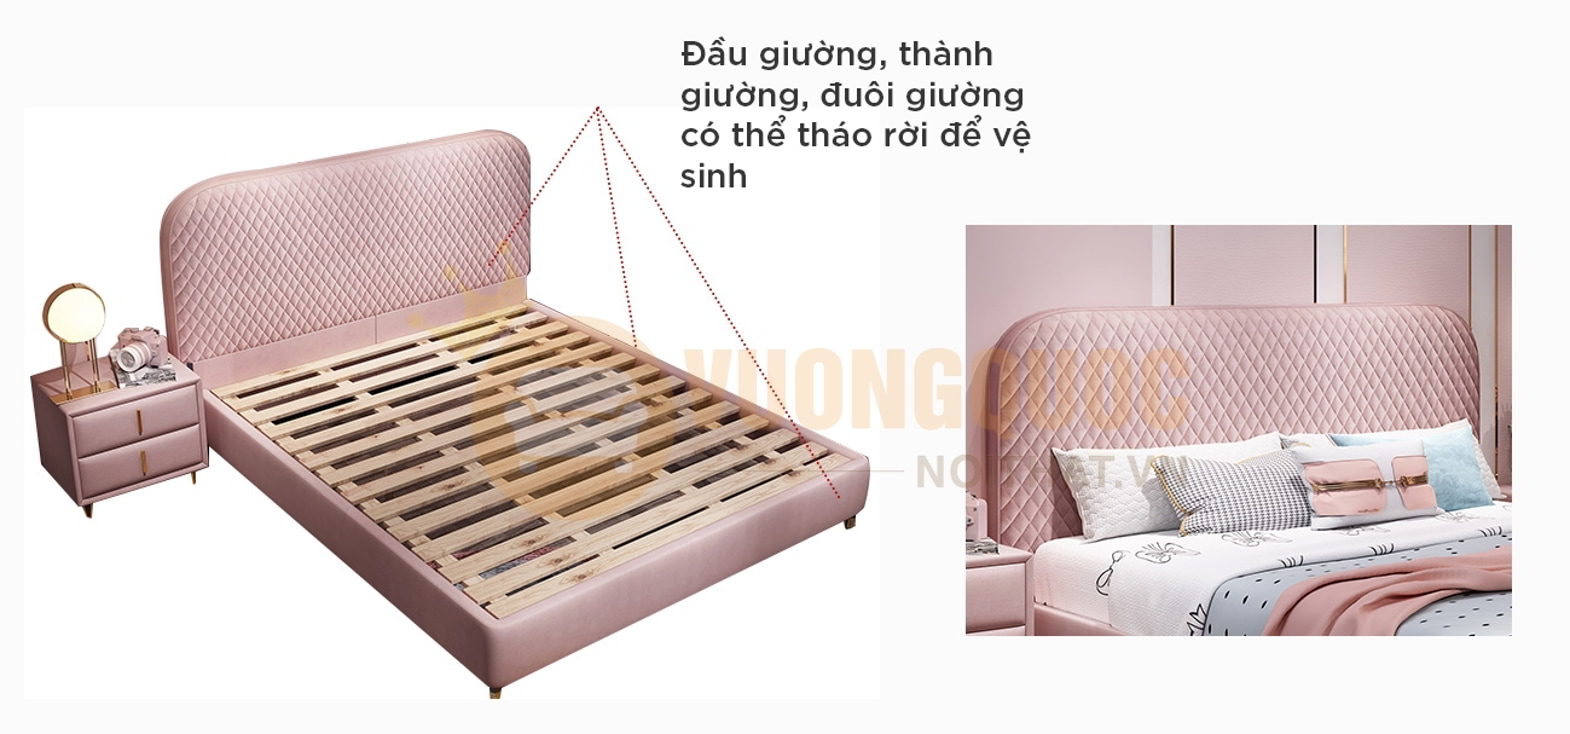 Giường ngủ trẻ em hiện đại nhập khẩu FDCB91 đầu giường và đuôi giường